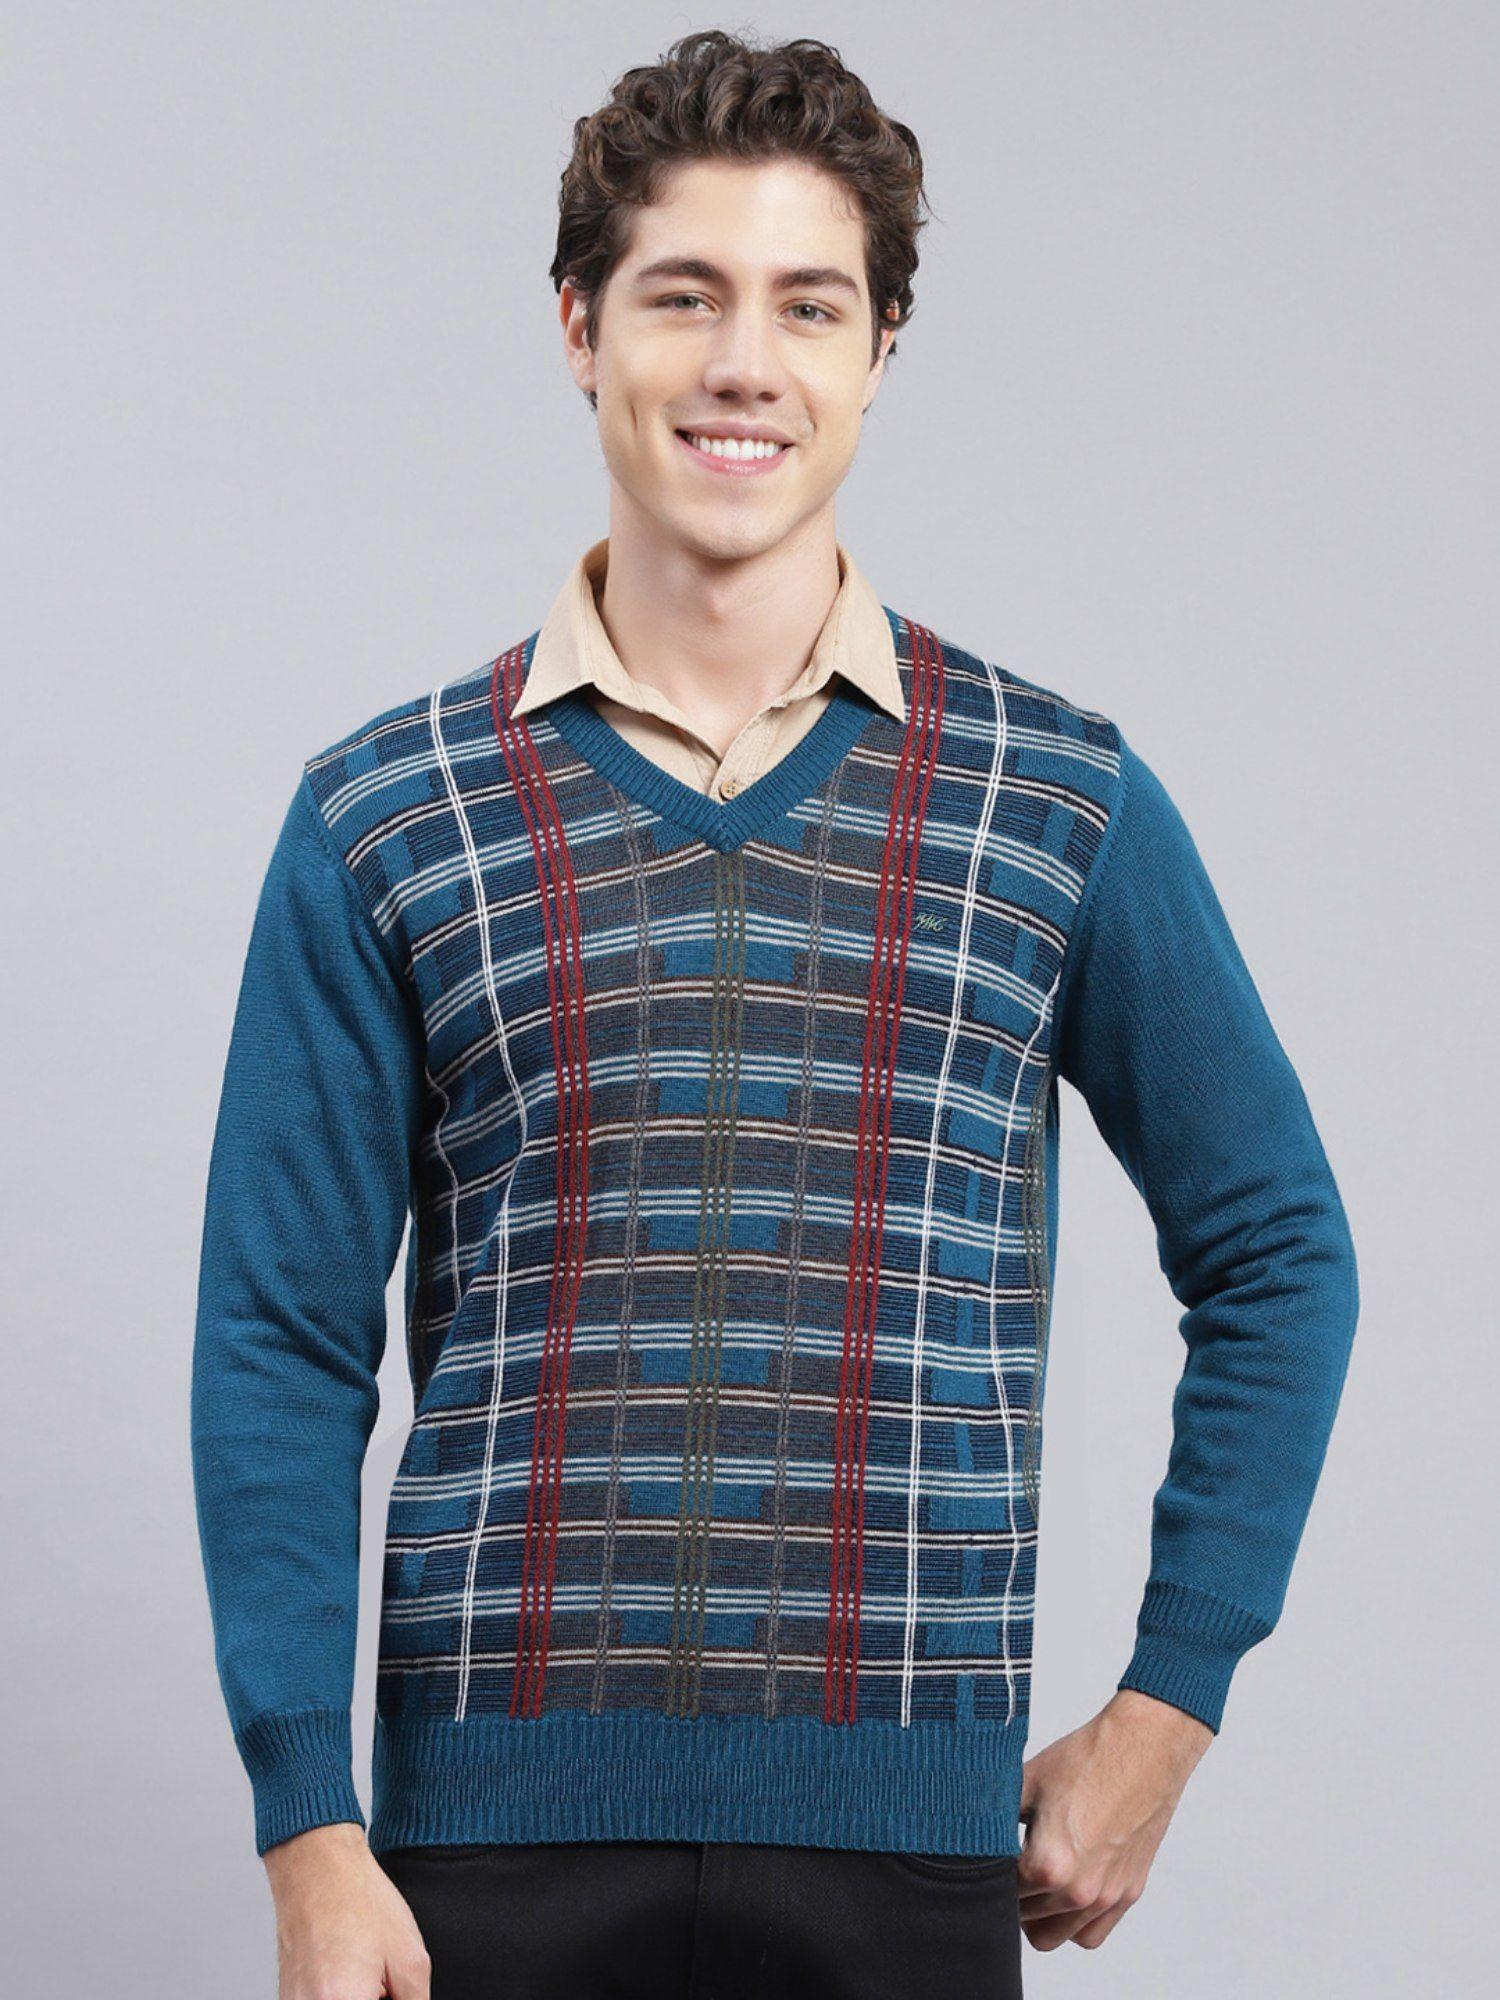 teal-checks-v-neck-pullover-sweater